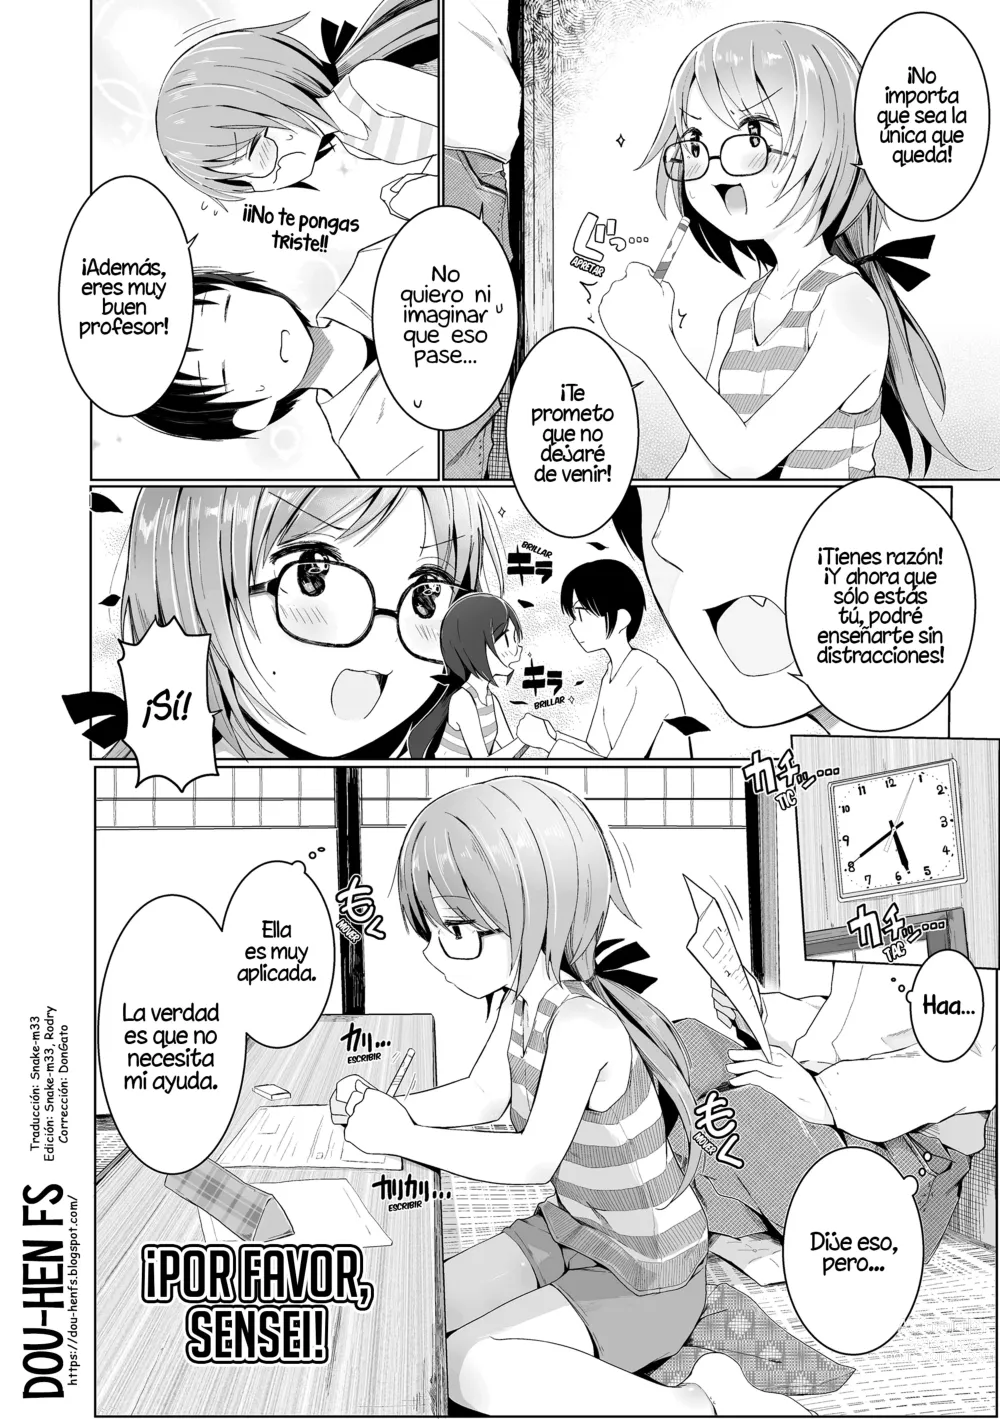 Page 2 of manga ¡Por favor, Sensei!